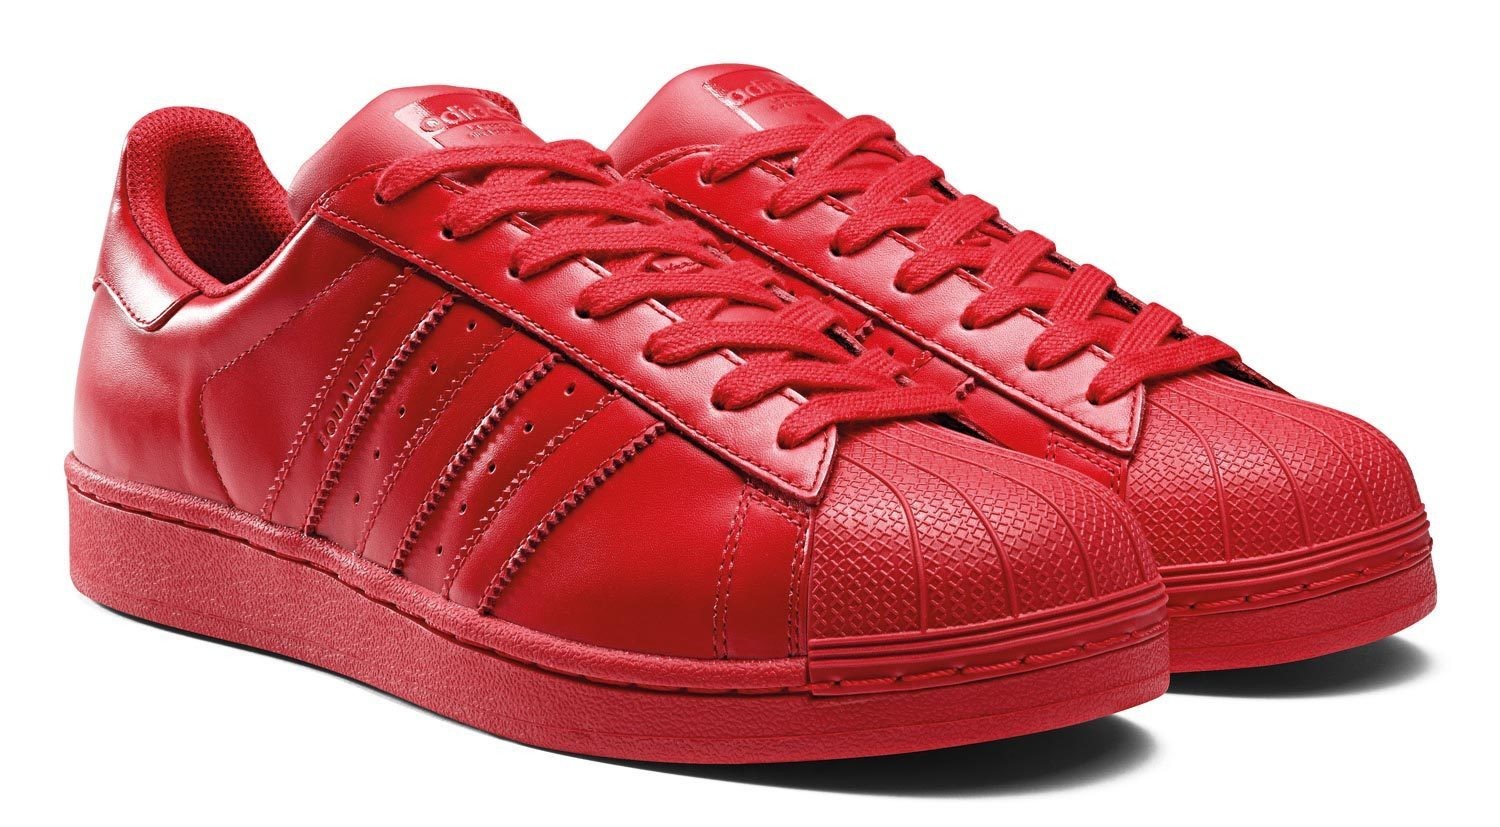 maart Vrijgevig Dronken worden Adidas Superstar Supercolor Red